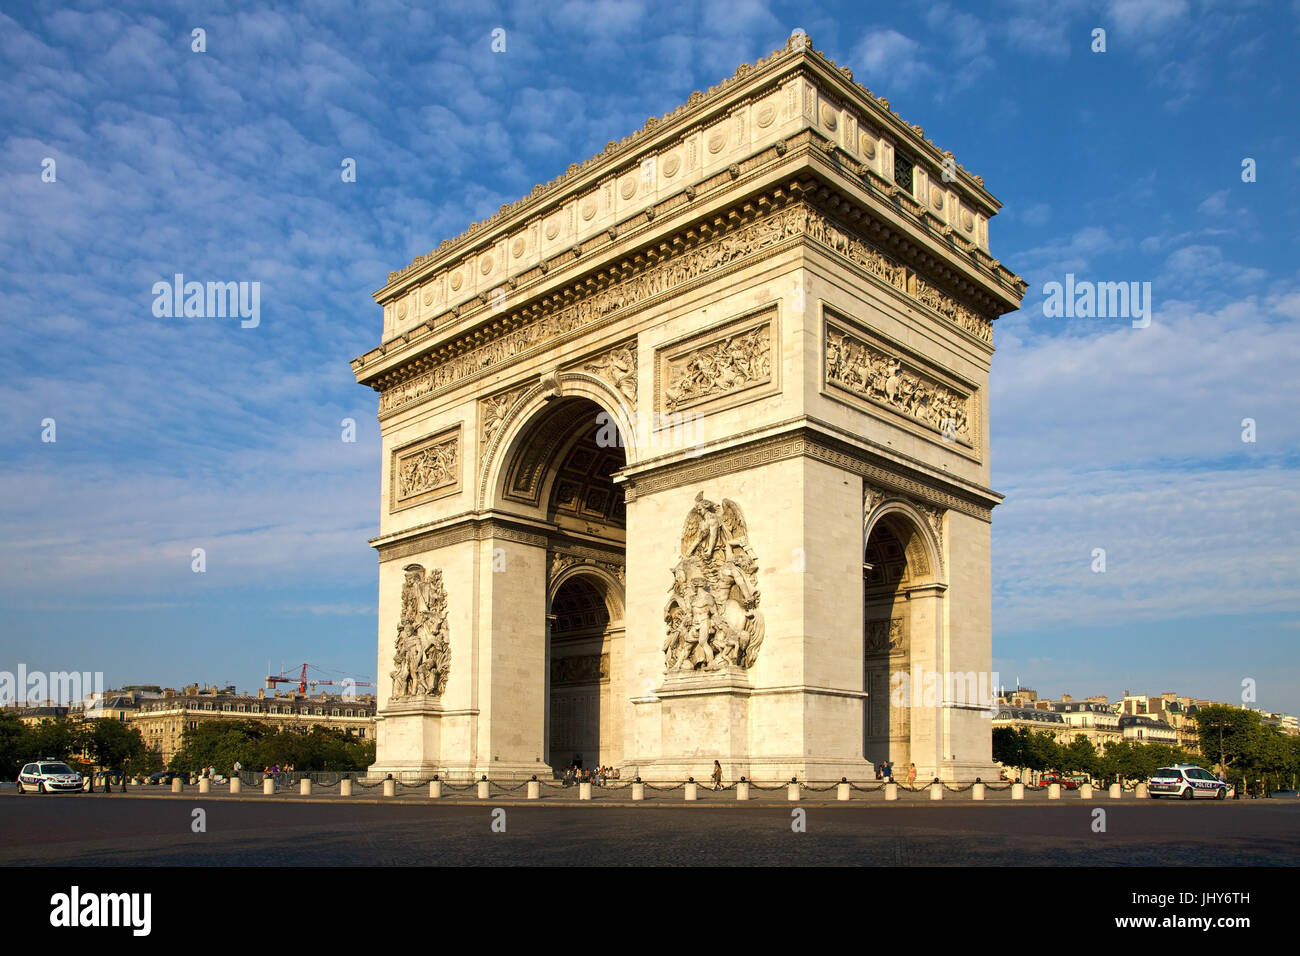 Arc de Triomphe in the Champs-Elysees, Paris, France - Arc de Triomphe At Champs-Elysees, France, Paris, Arc de Triomphe an der Champs-Elysees, Frankr Stock Photo